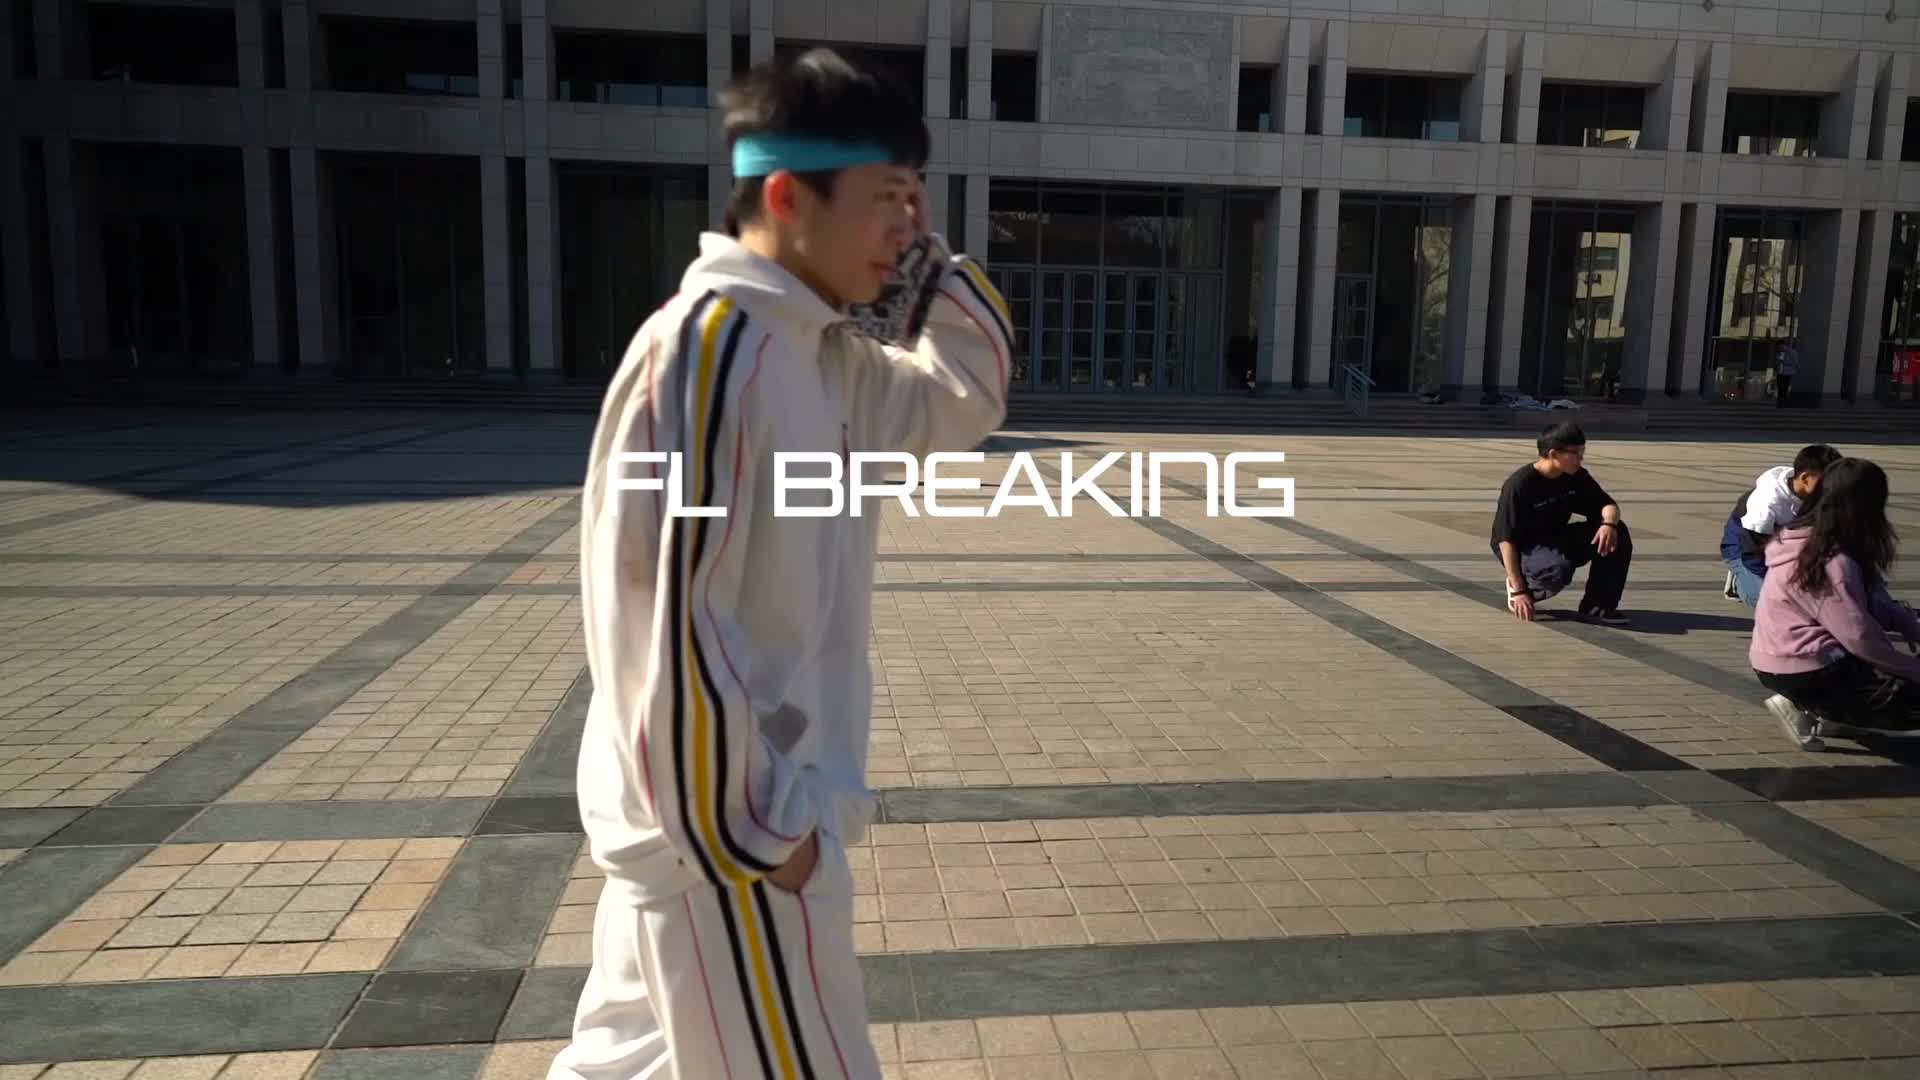 【北京大学风雷街舞社】Breaking队宣传视频